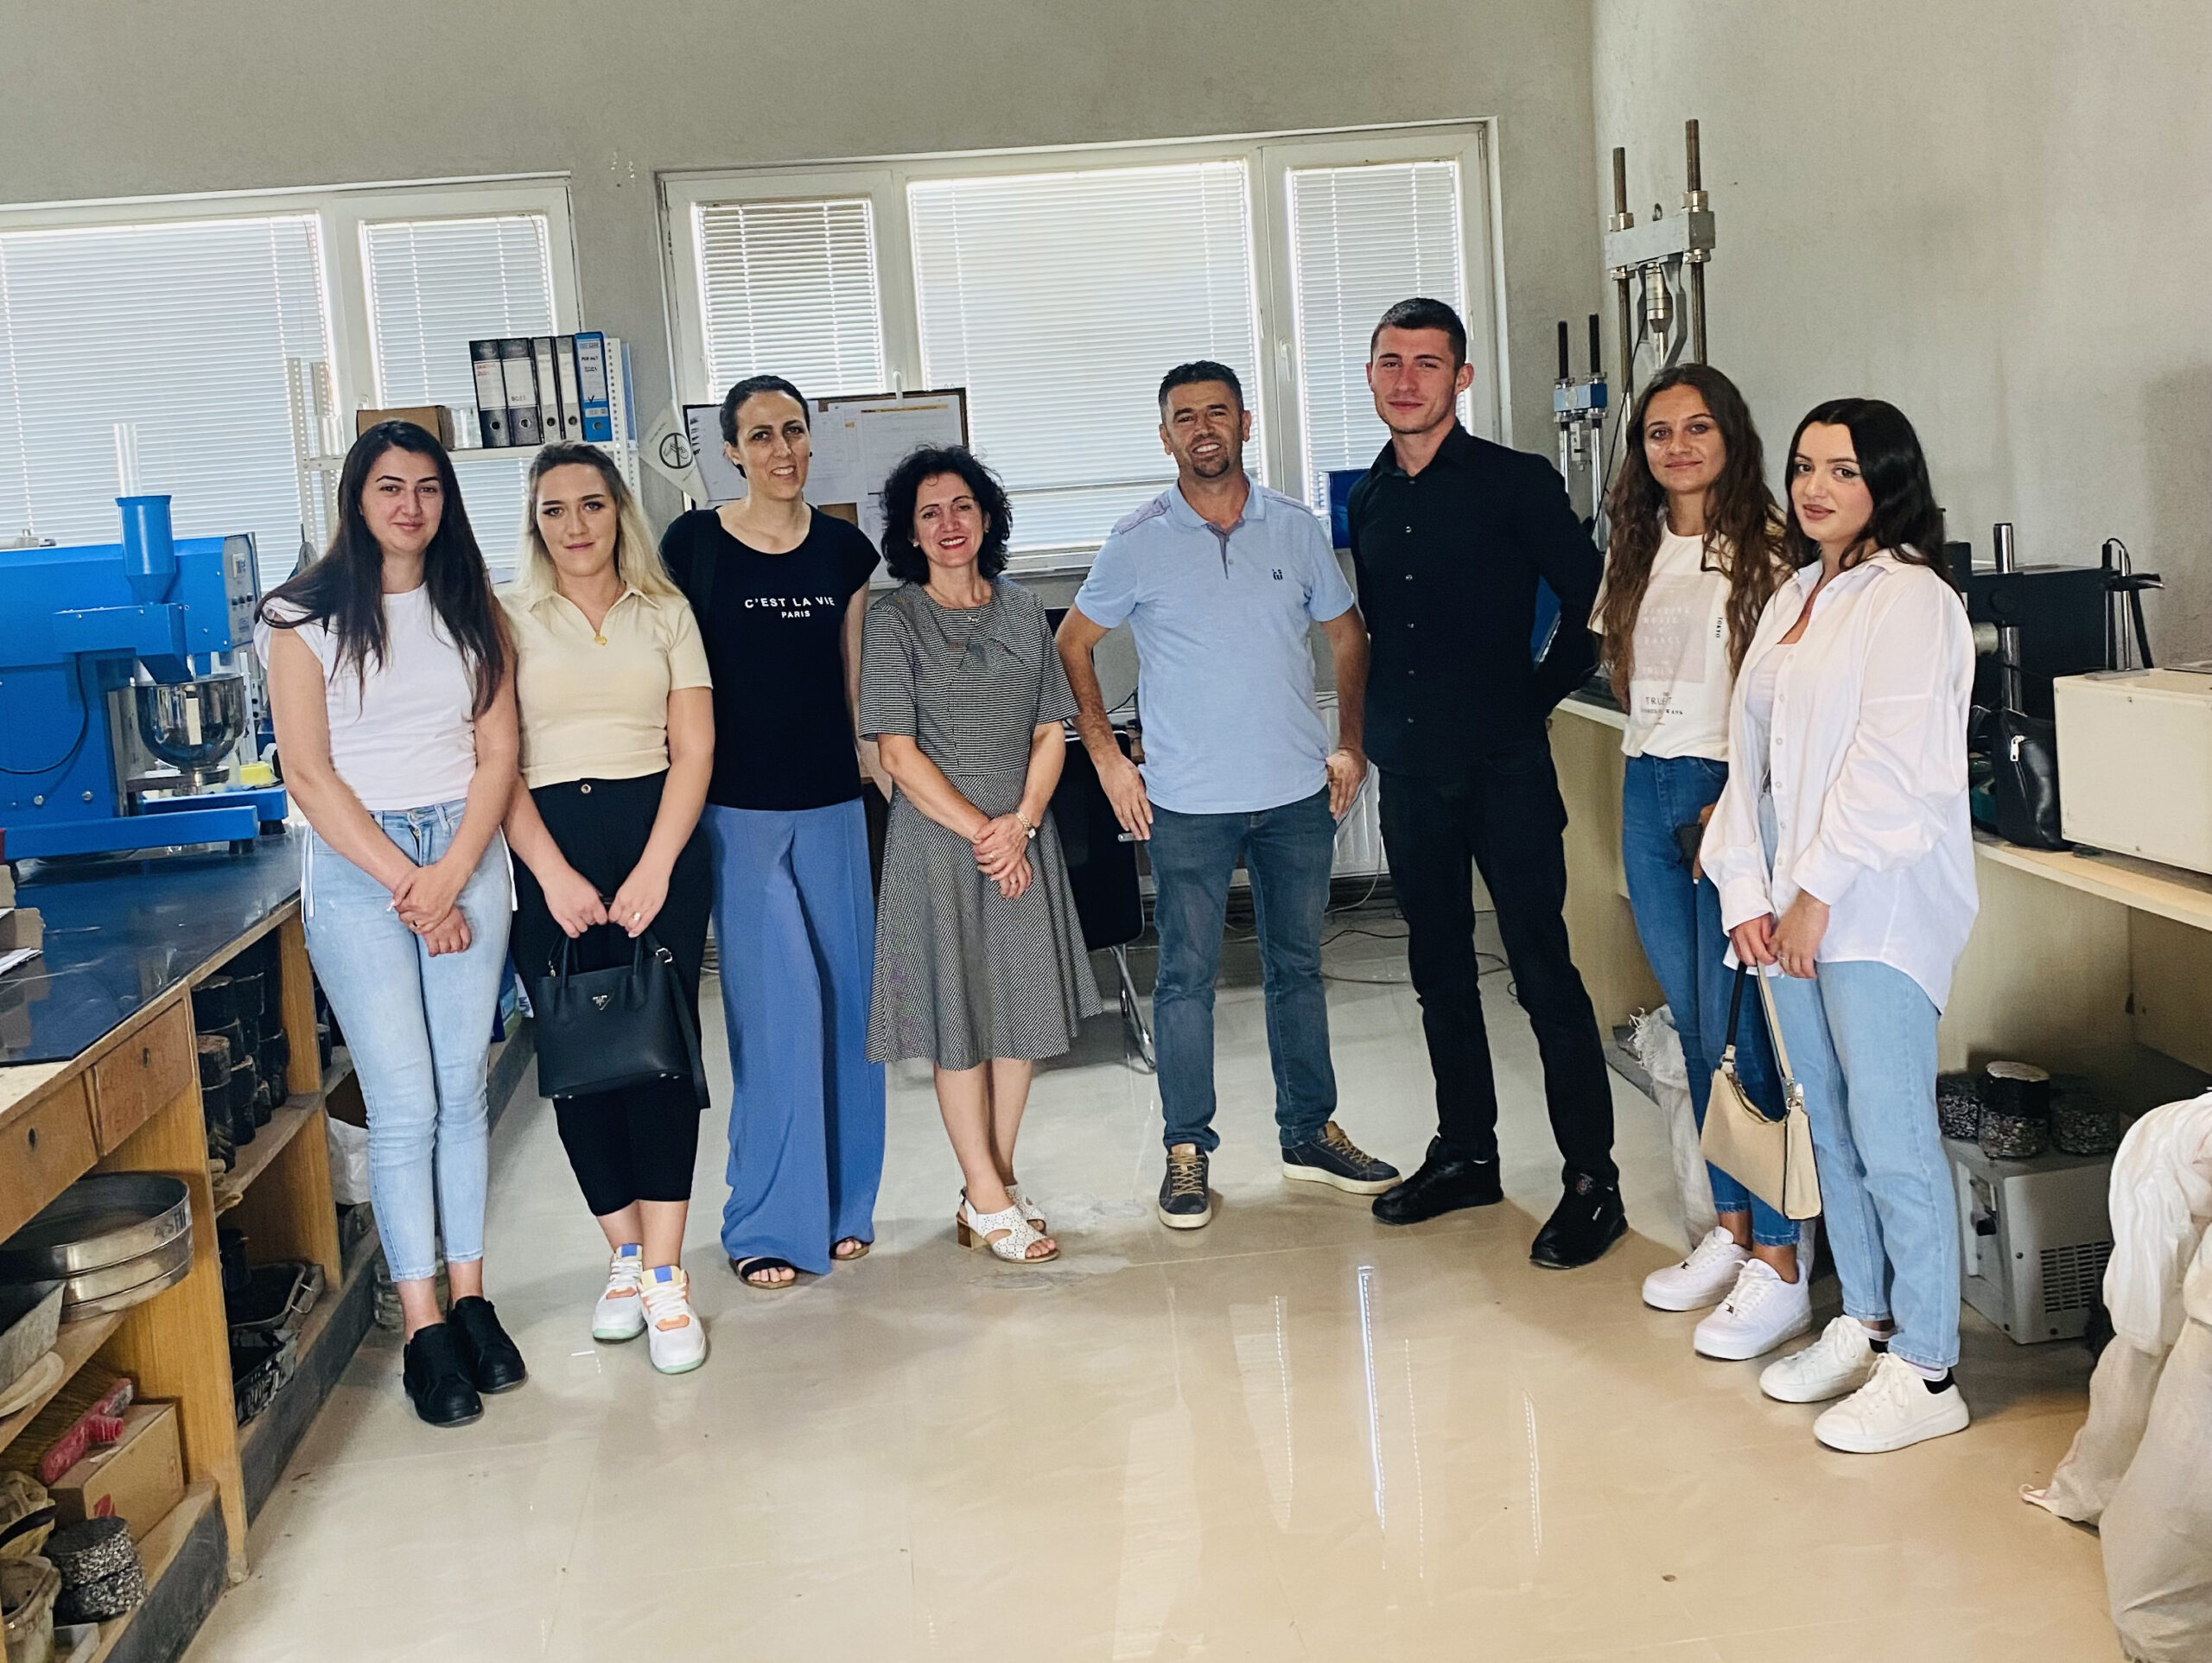 Studentët E Departamentit Materiale Dhe Metalurgji, Filluan Një Praktikë Me Mundësi Punësimi Në Institutin “Ballkan Projekt”